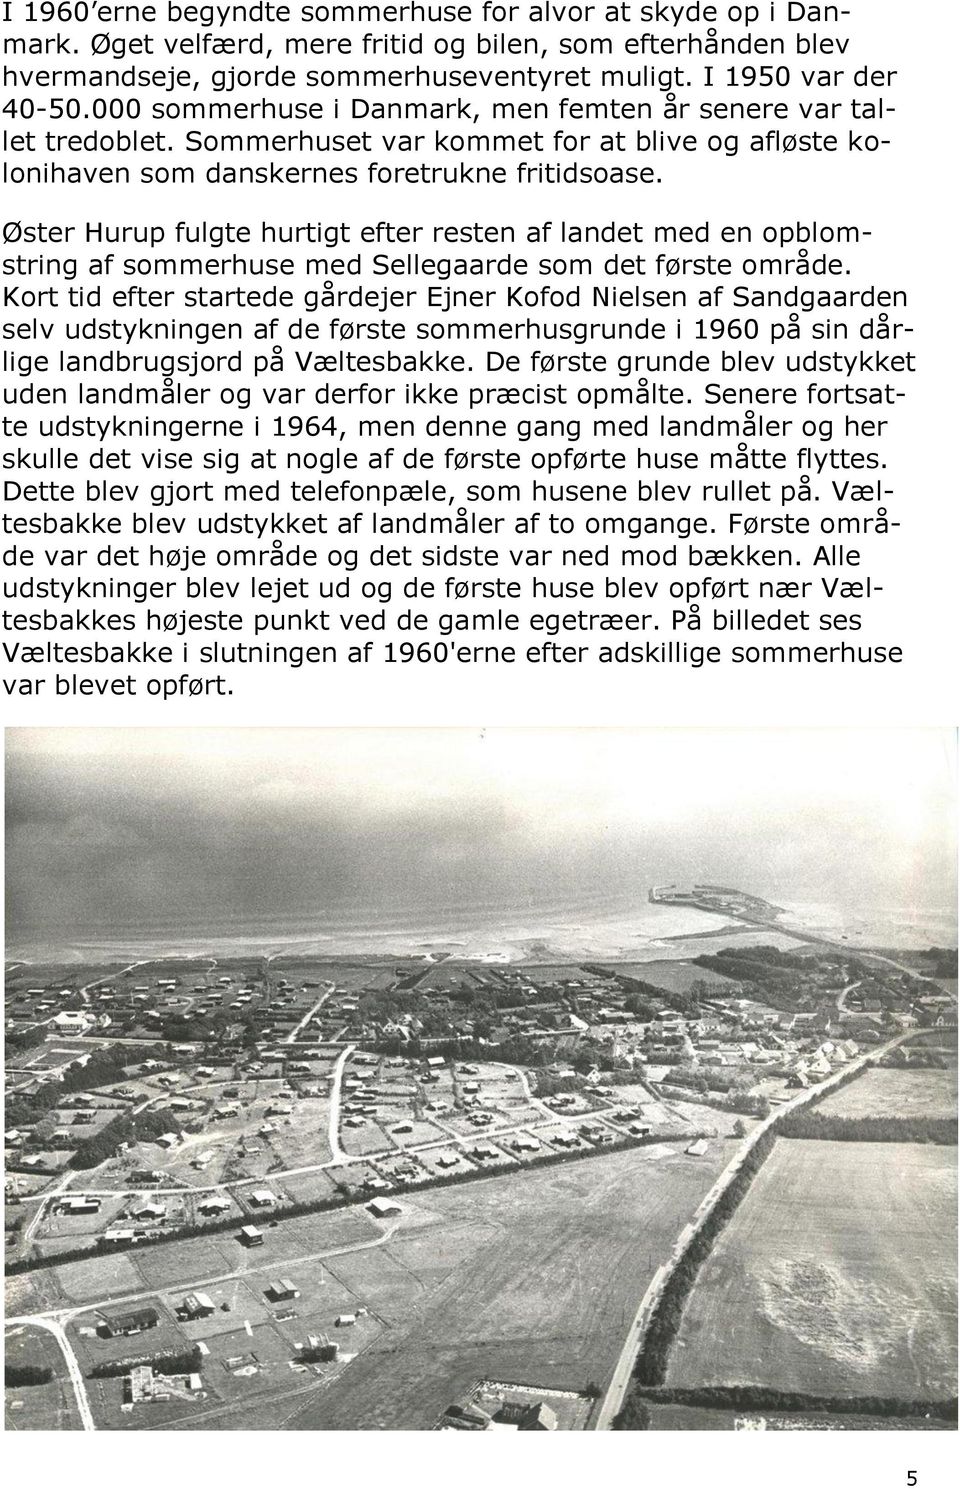 Øster Hurup fulgte hurtigt efter resten af landet med en opblomstring af sommerhuse med Sellegaarde som det første område.